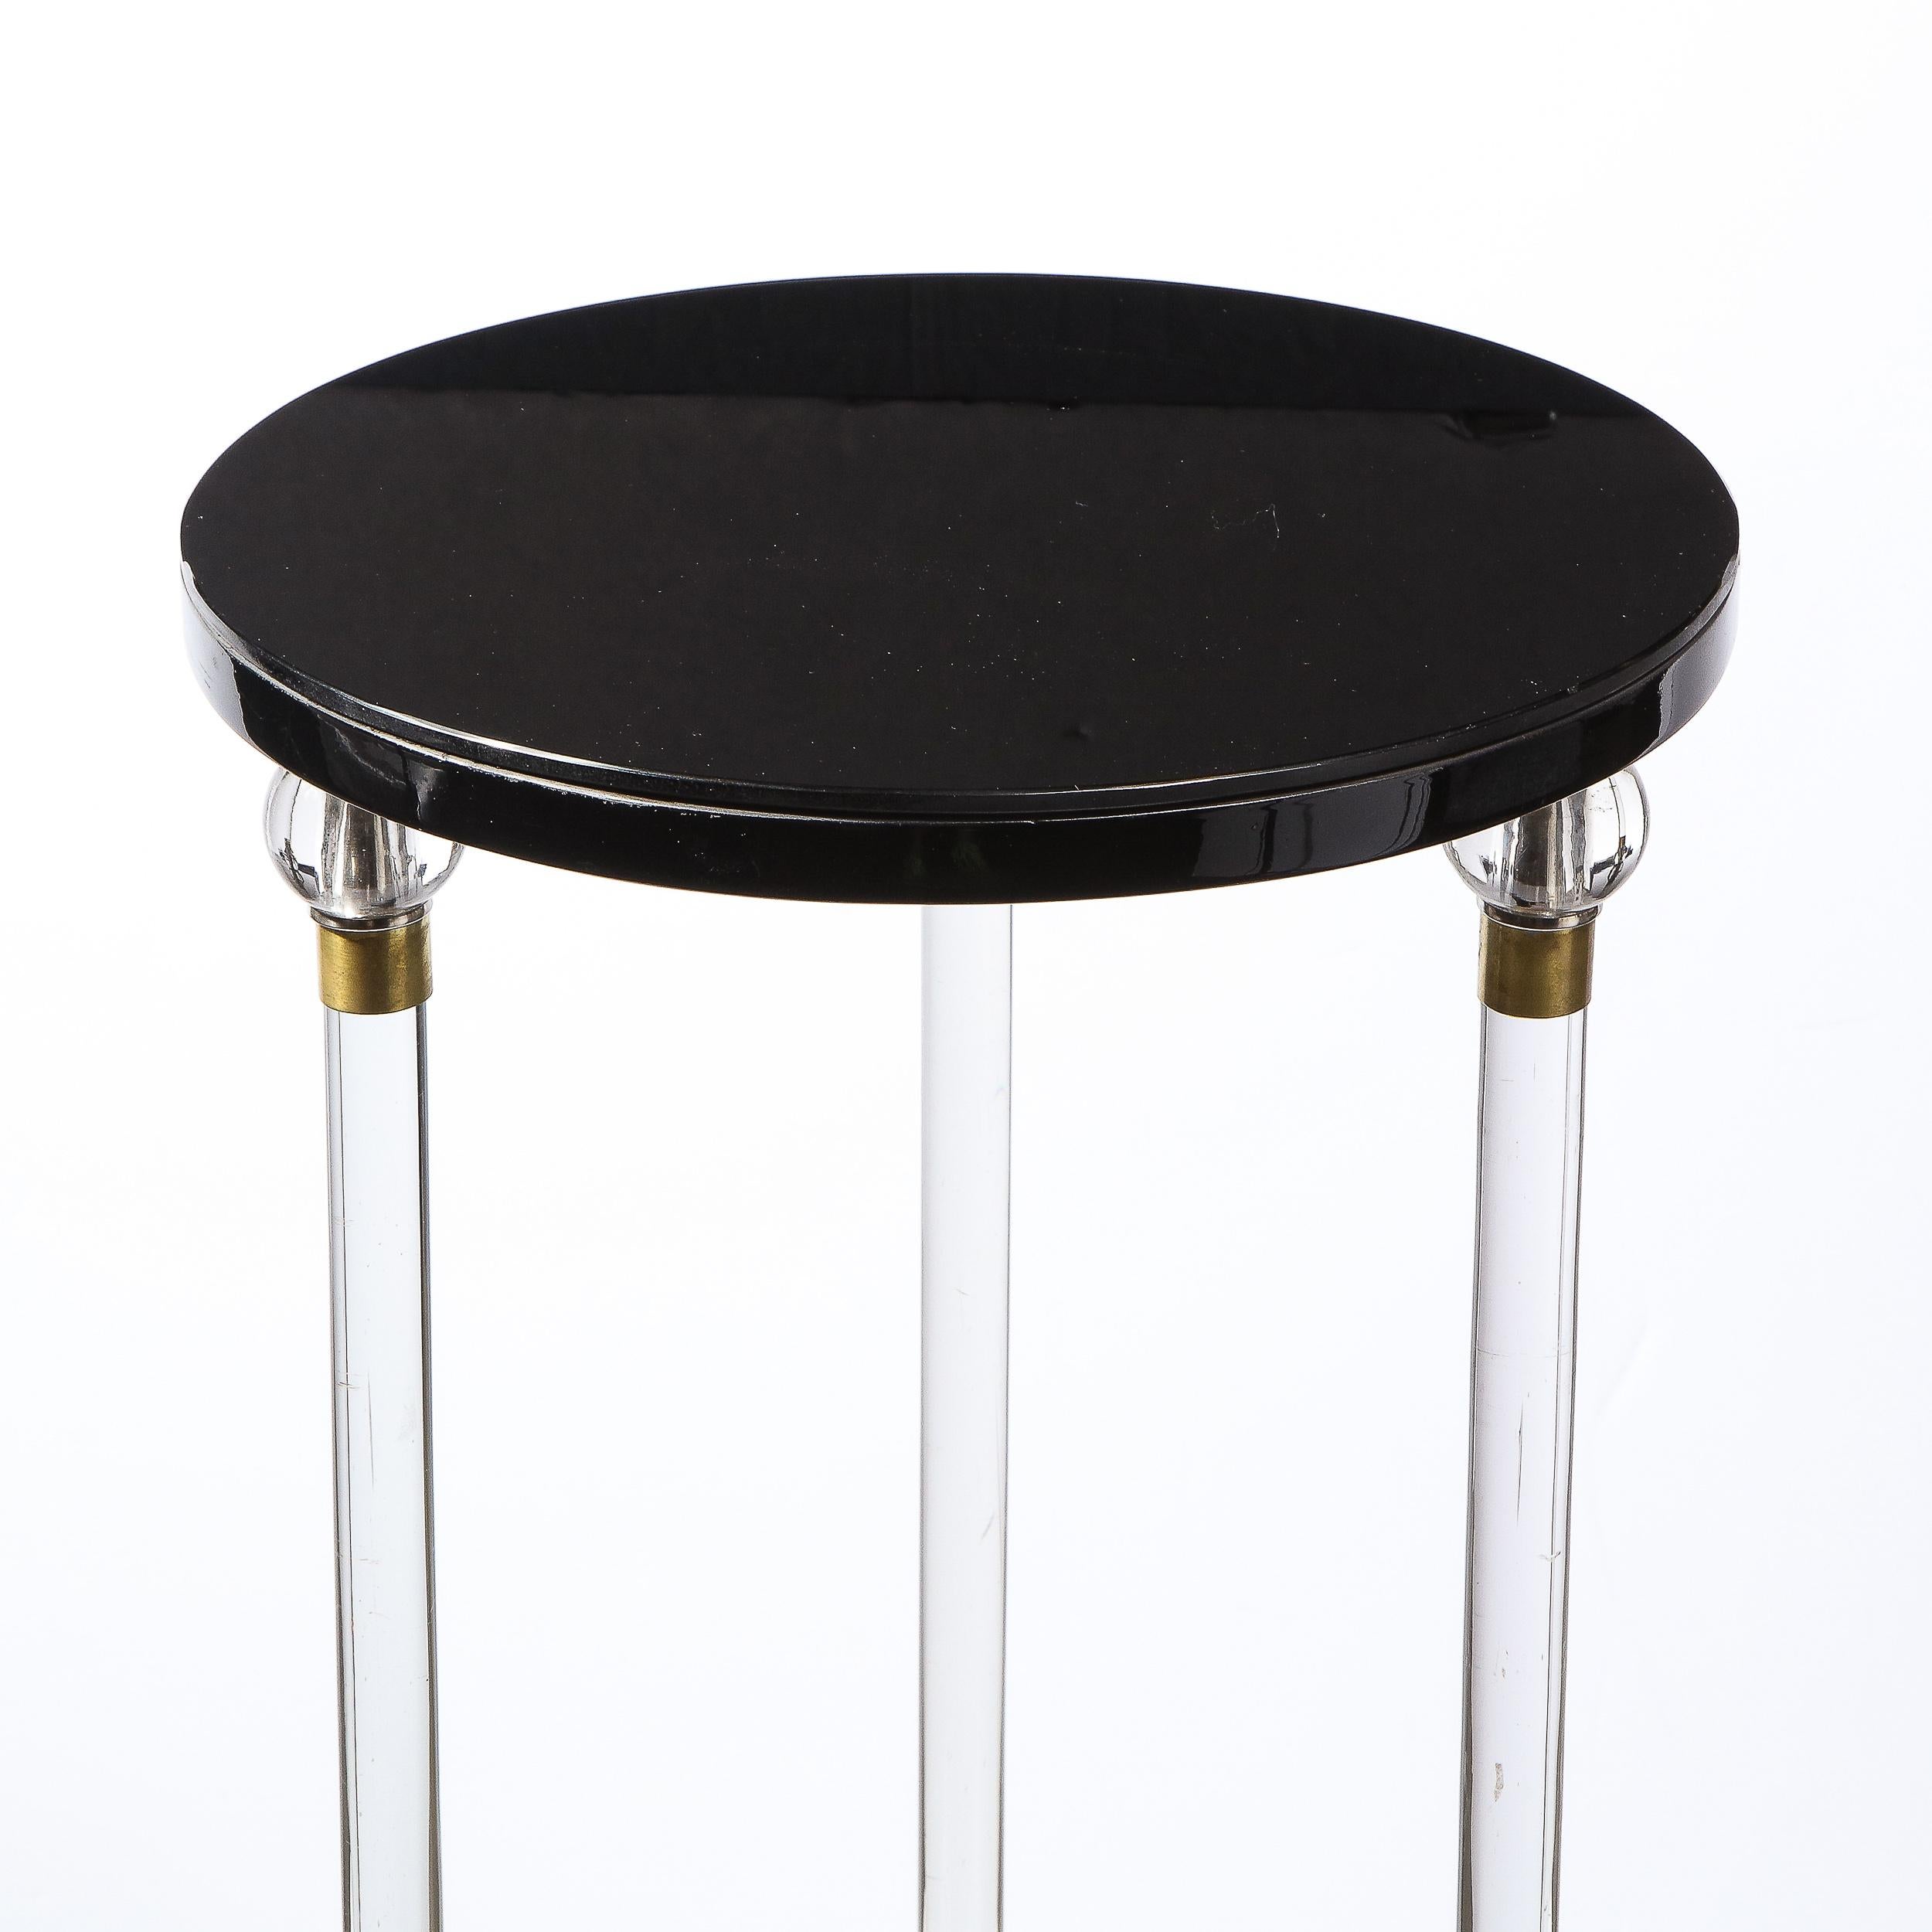 Zweistöckiger Art-déco-Sockel in schwarzem Lack mit Vitrolite- und durchscheinendem Glasplatte (Art déco)